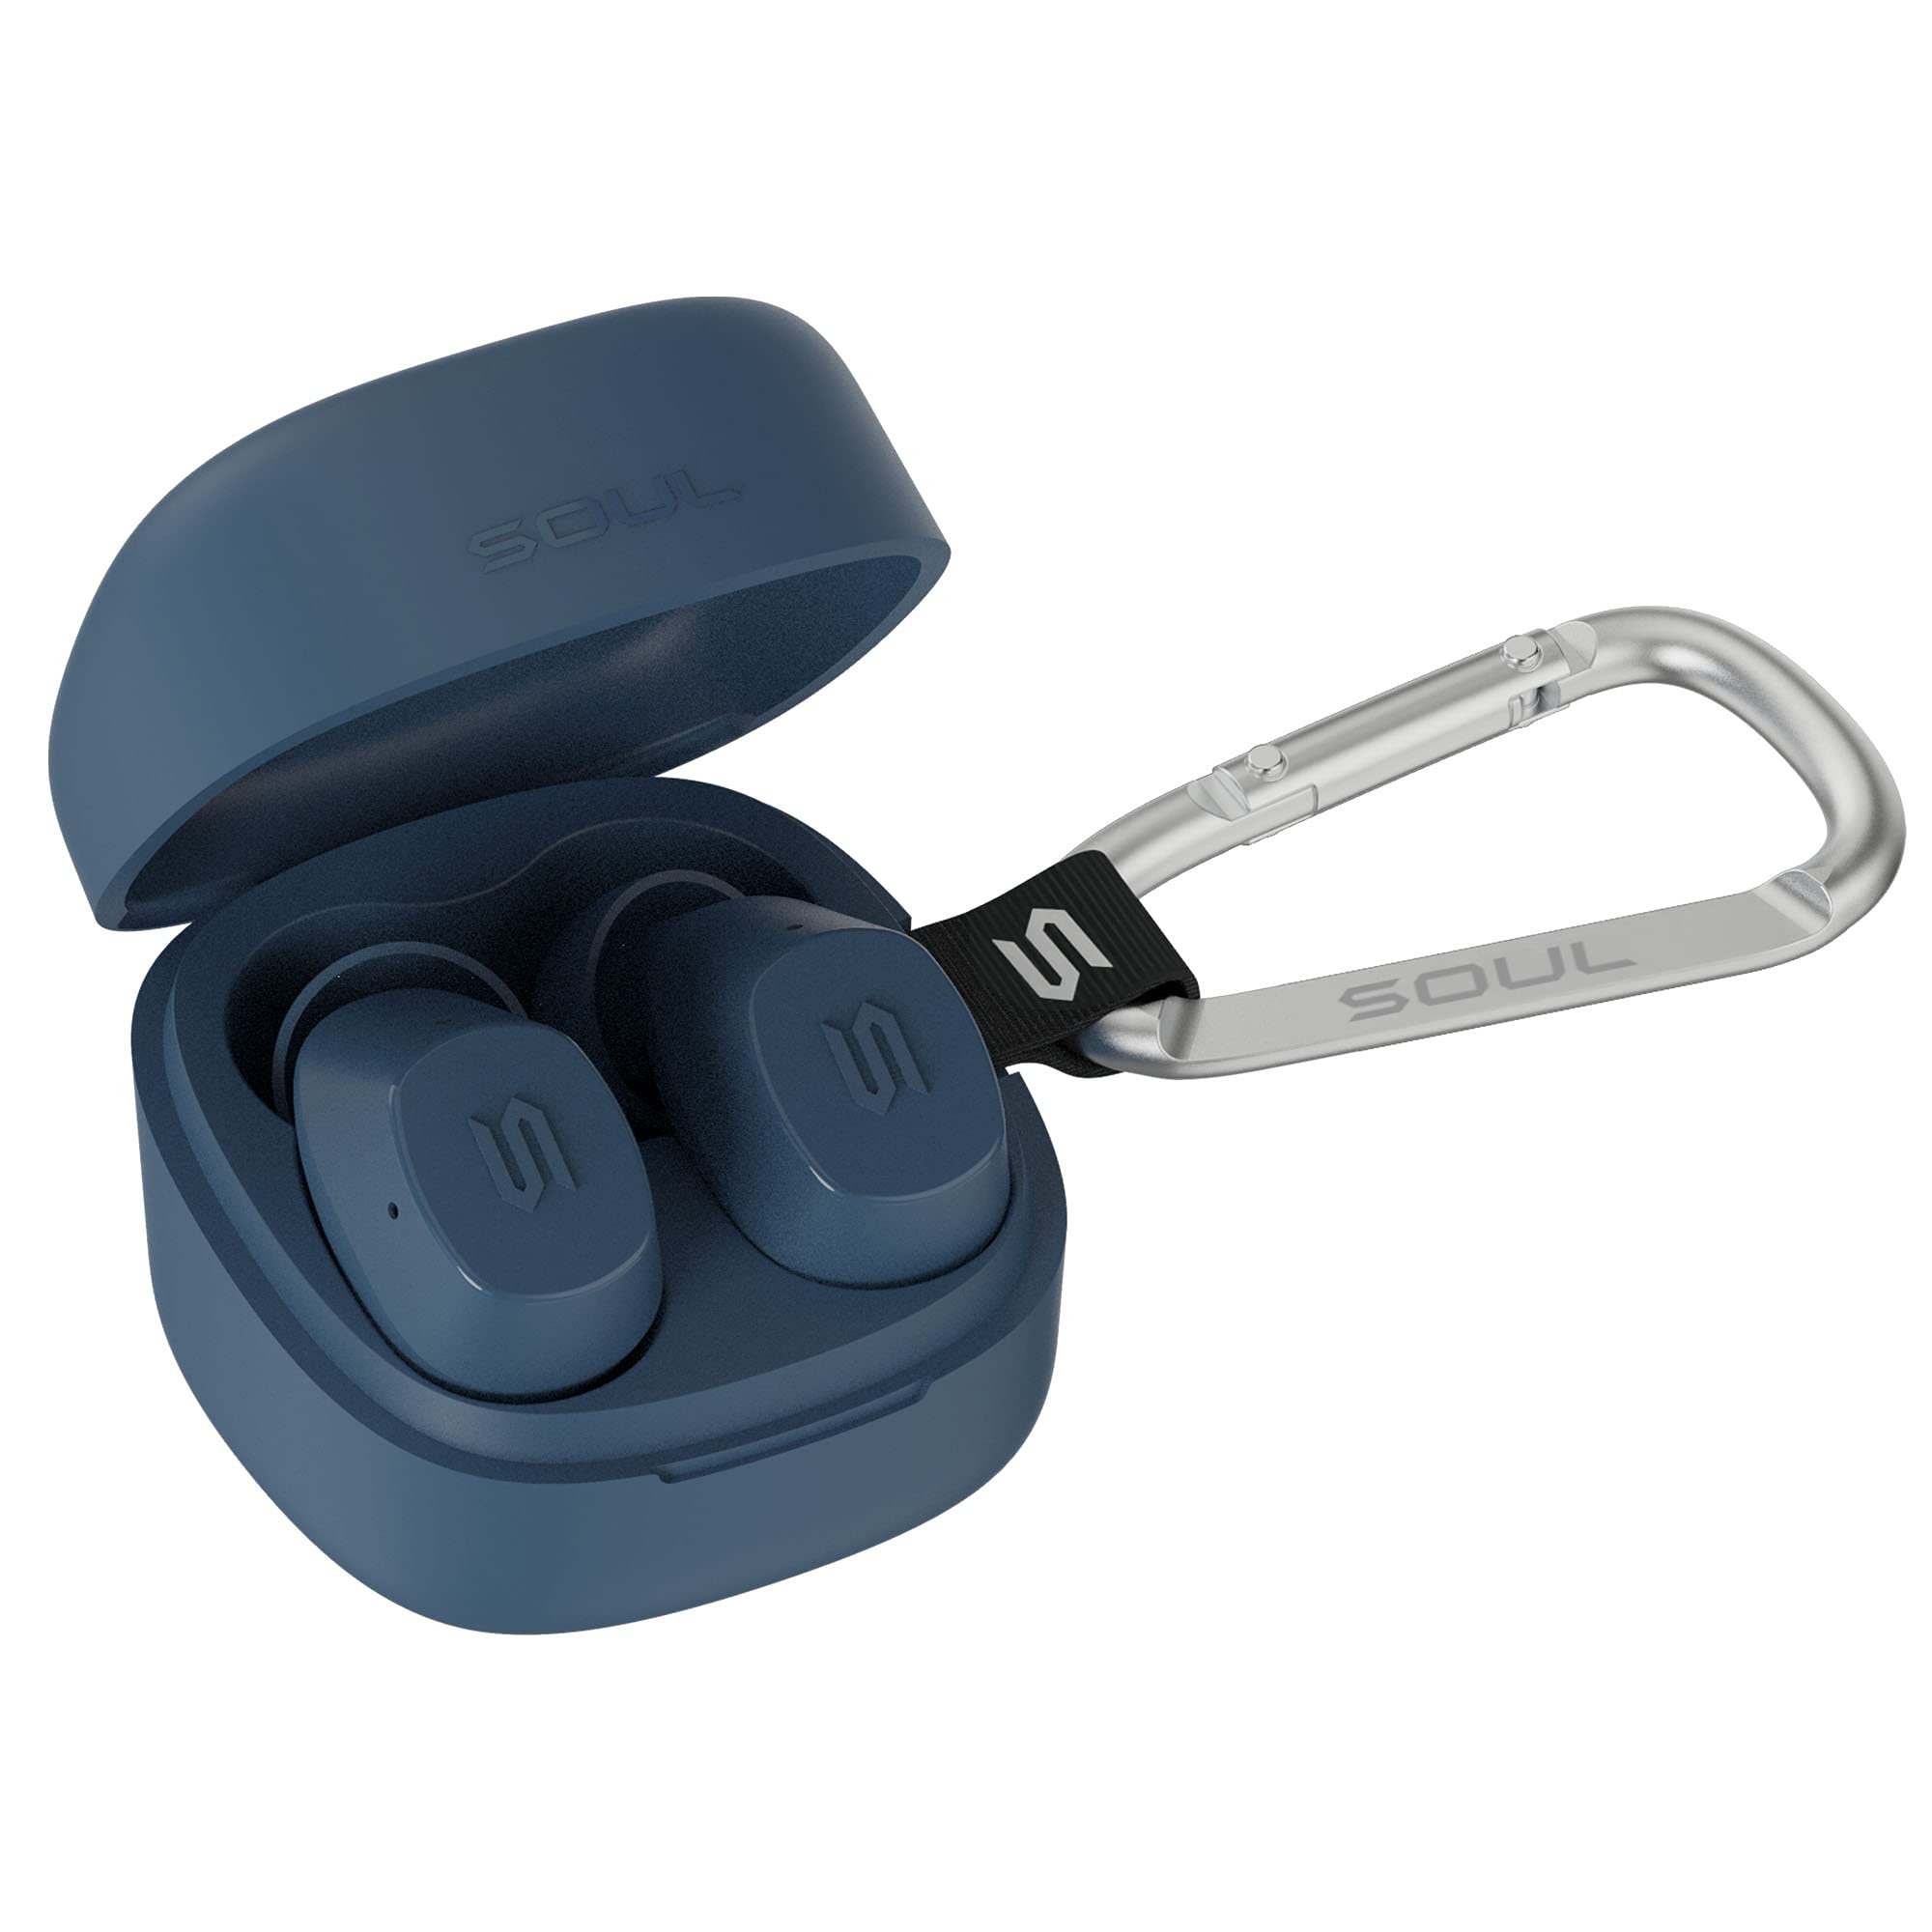 New SOUL S-Nano True Wireless Earbuds - in Ear Headphones, Ultra Portable, Bluetooth, IPX5 Waterproof, Transparency Mode - Blue